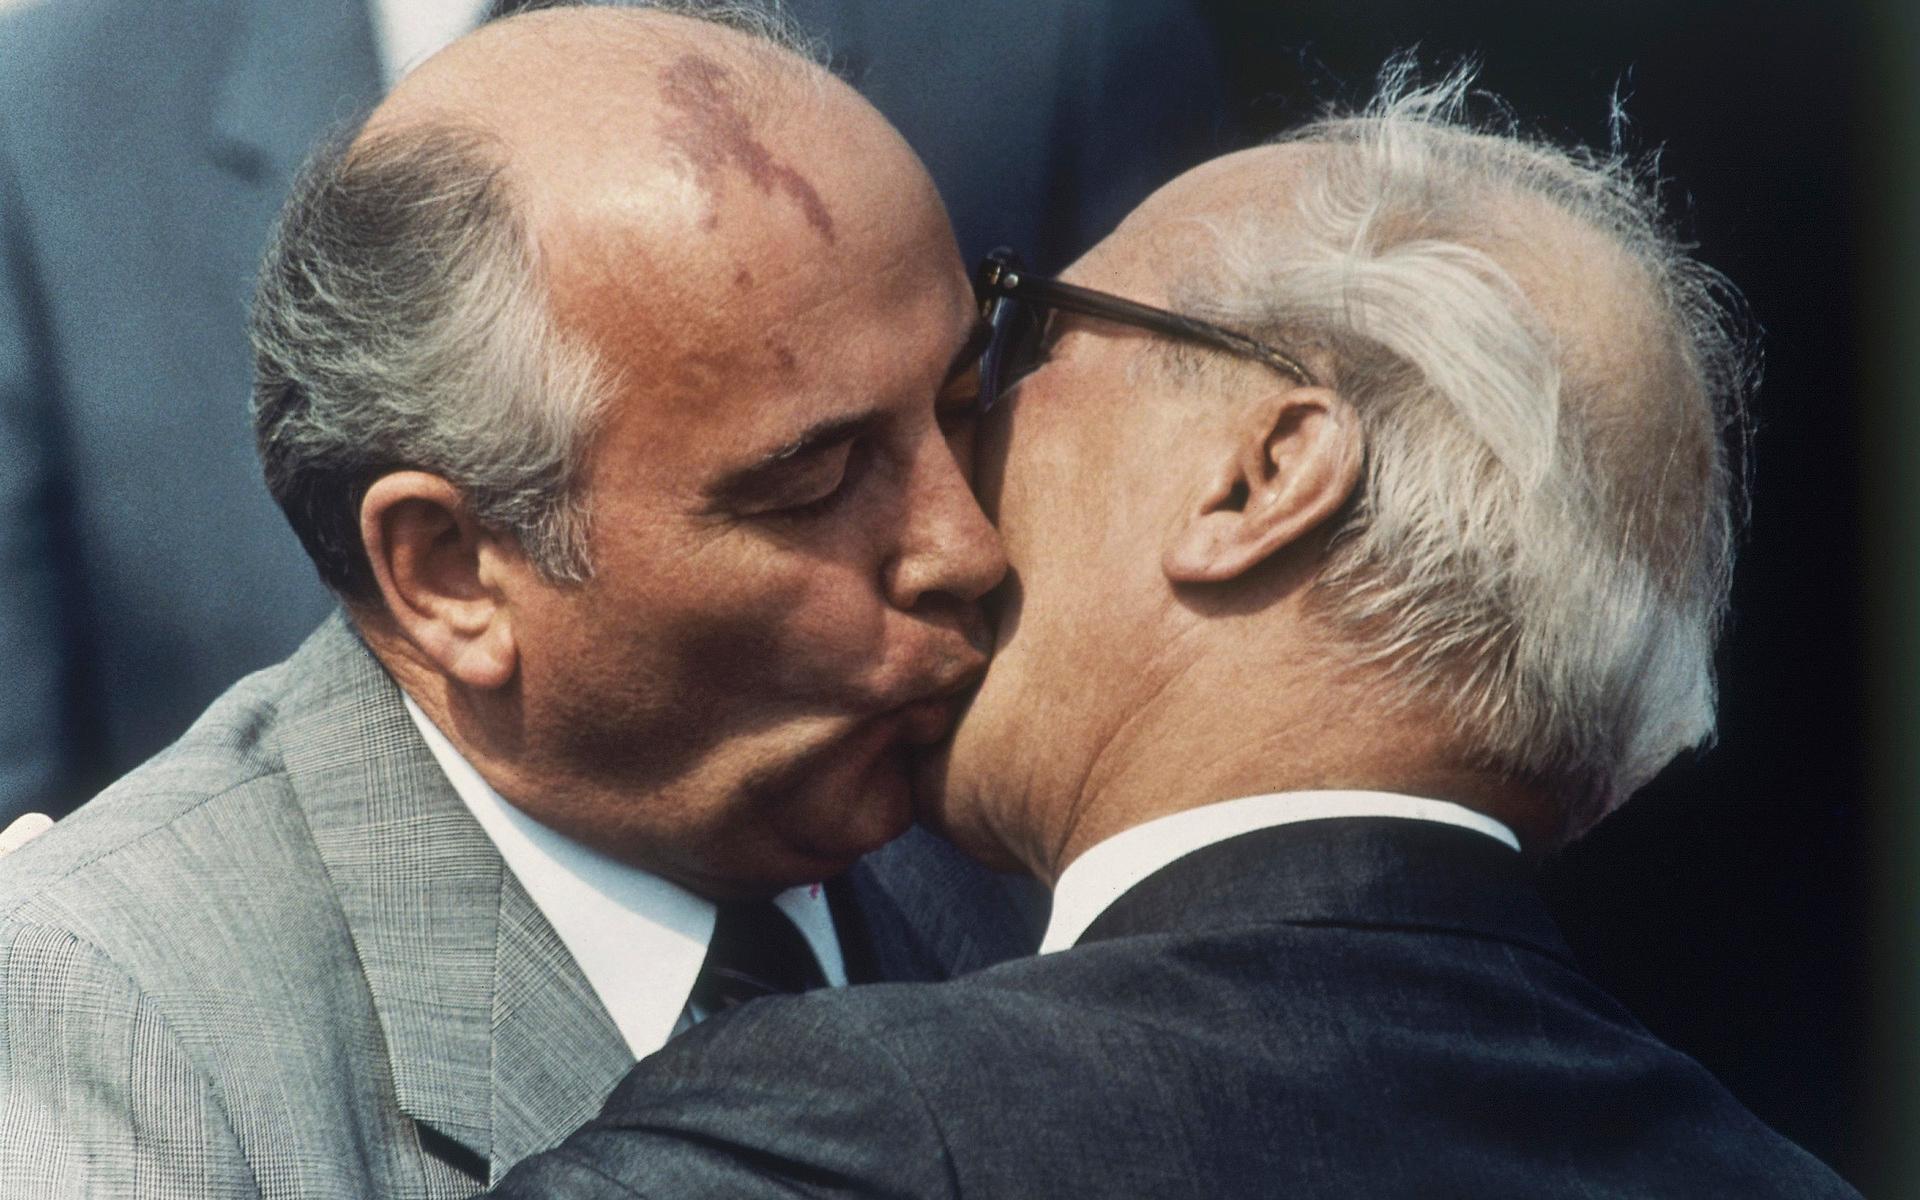 På en bild från 1987 kindpussar Michail Gorbatjov den dåvarande östtyske ledaren Erich Honecker.